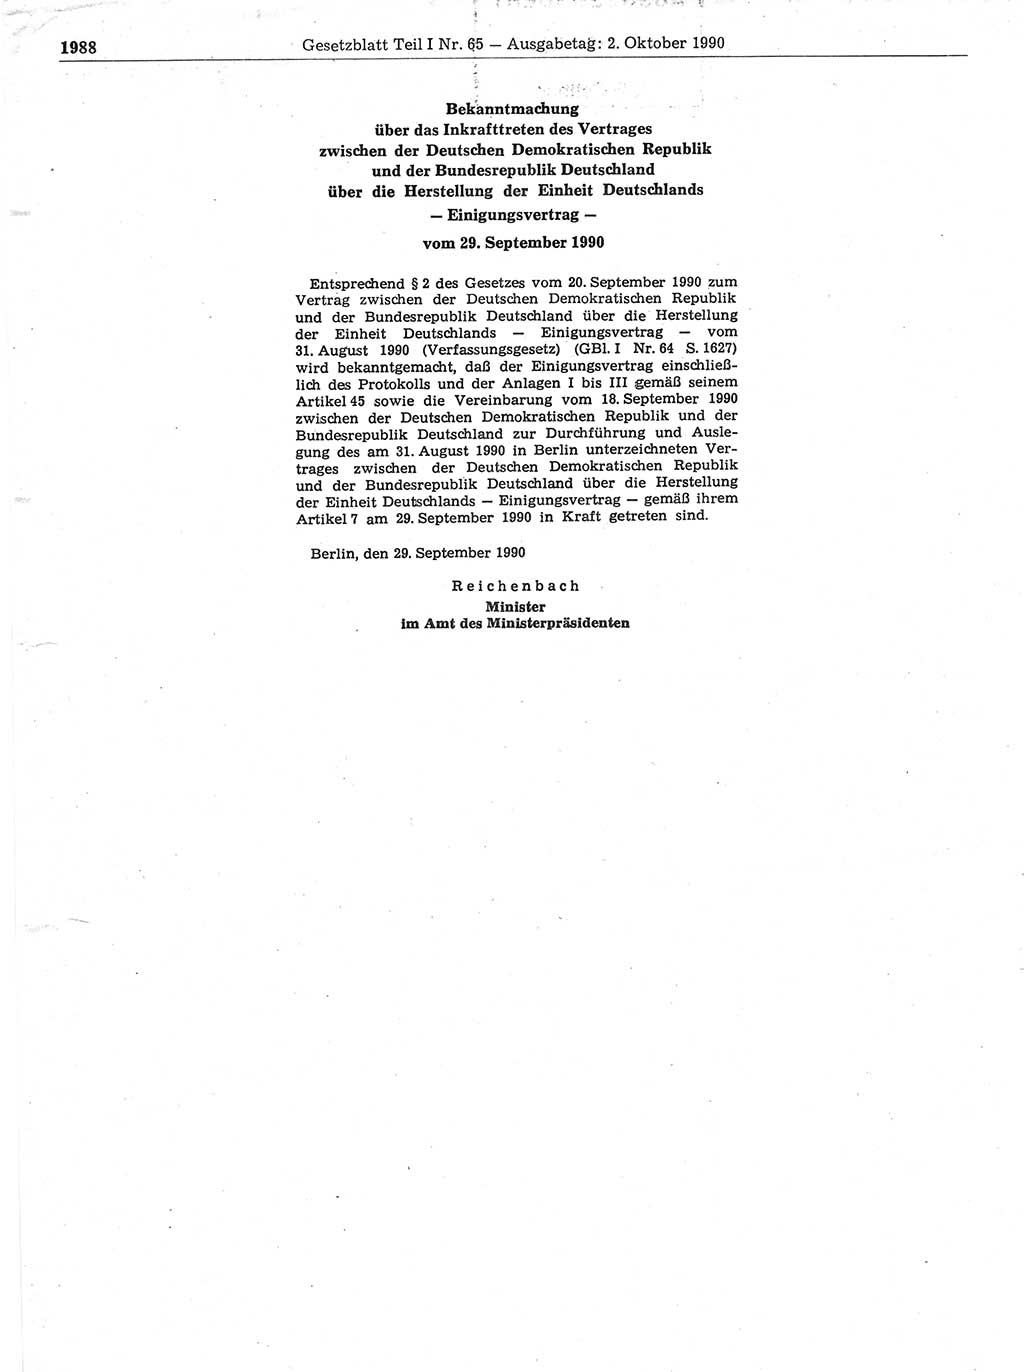 Gesetzblatt (GBl.) der Deutschen Demokratischen Republik (DDR) Teil Ⅰ 1990, Seite 1988 (GBl. DDR Ⅰ 1990, S. 1988)